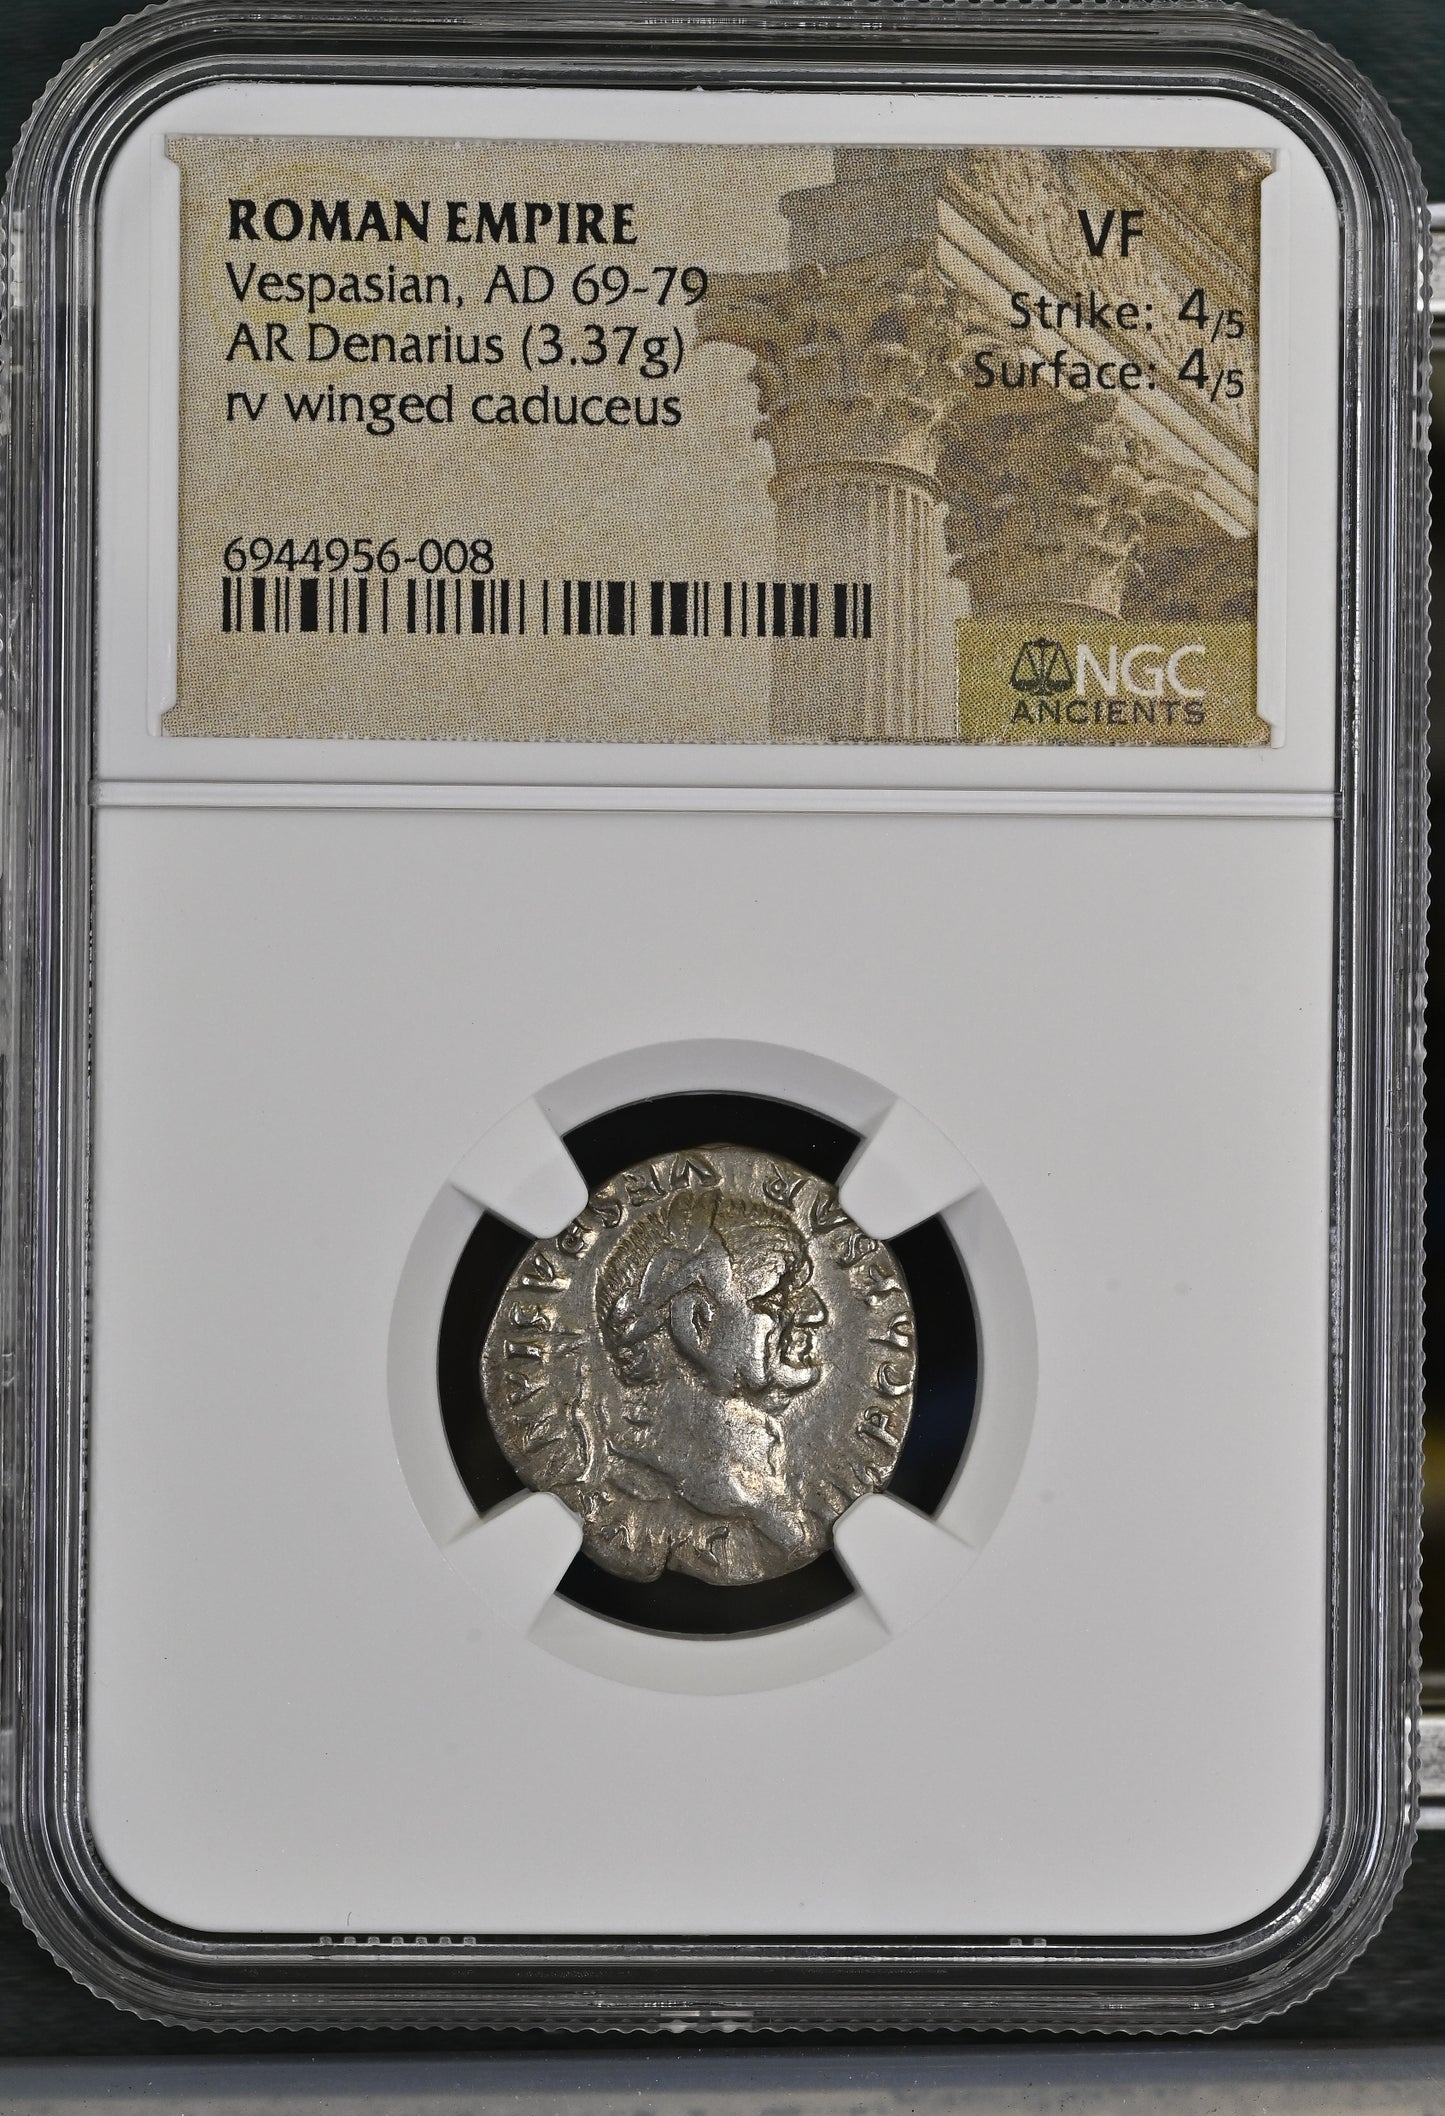 Roman Empire - Vespasian - Silver Denarius - NGC VF- RIC:684